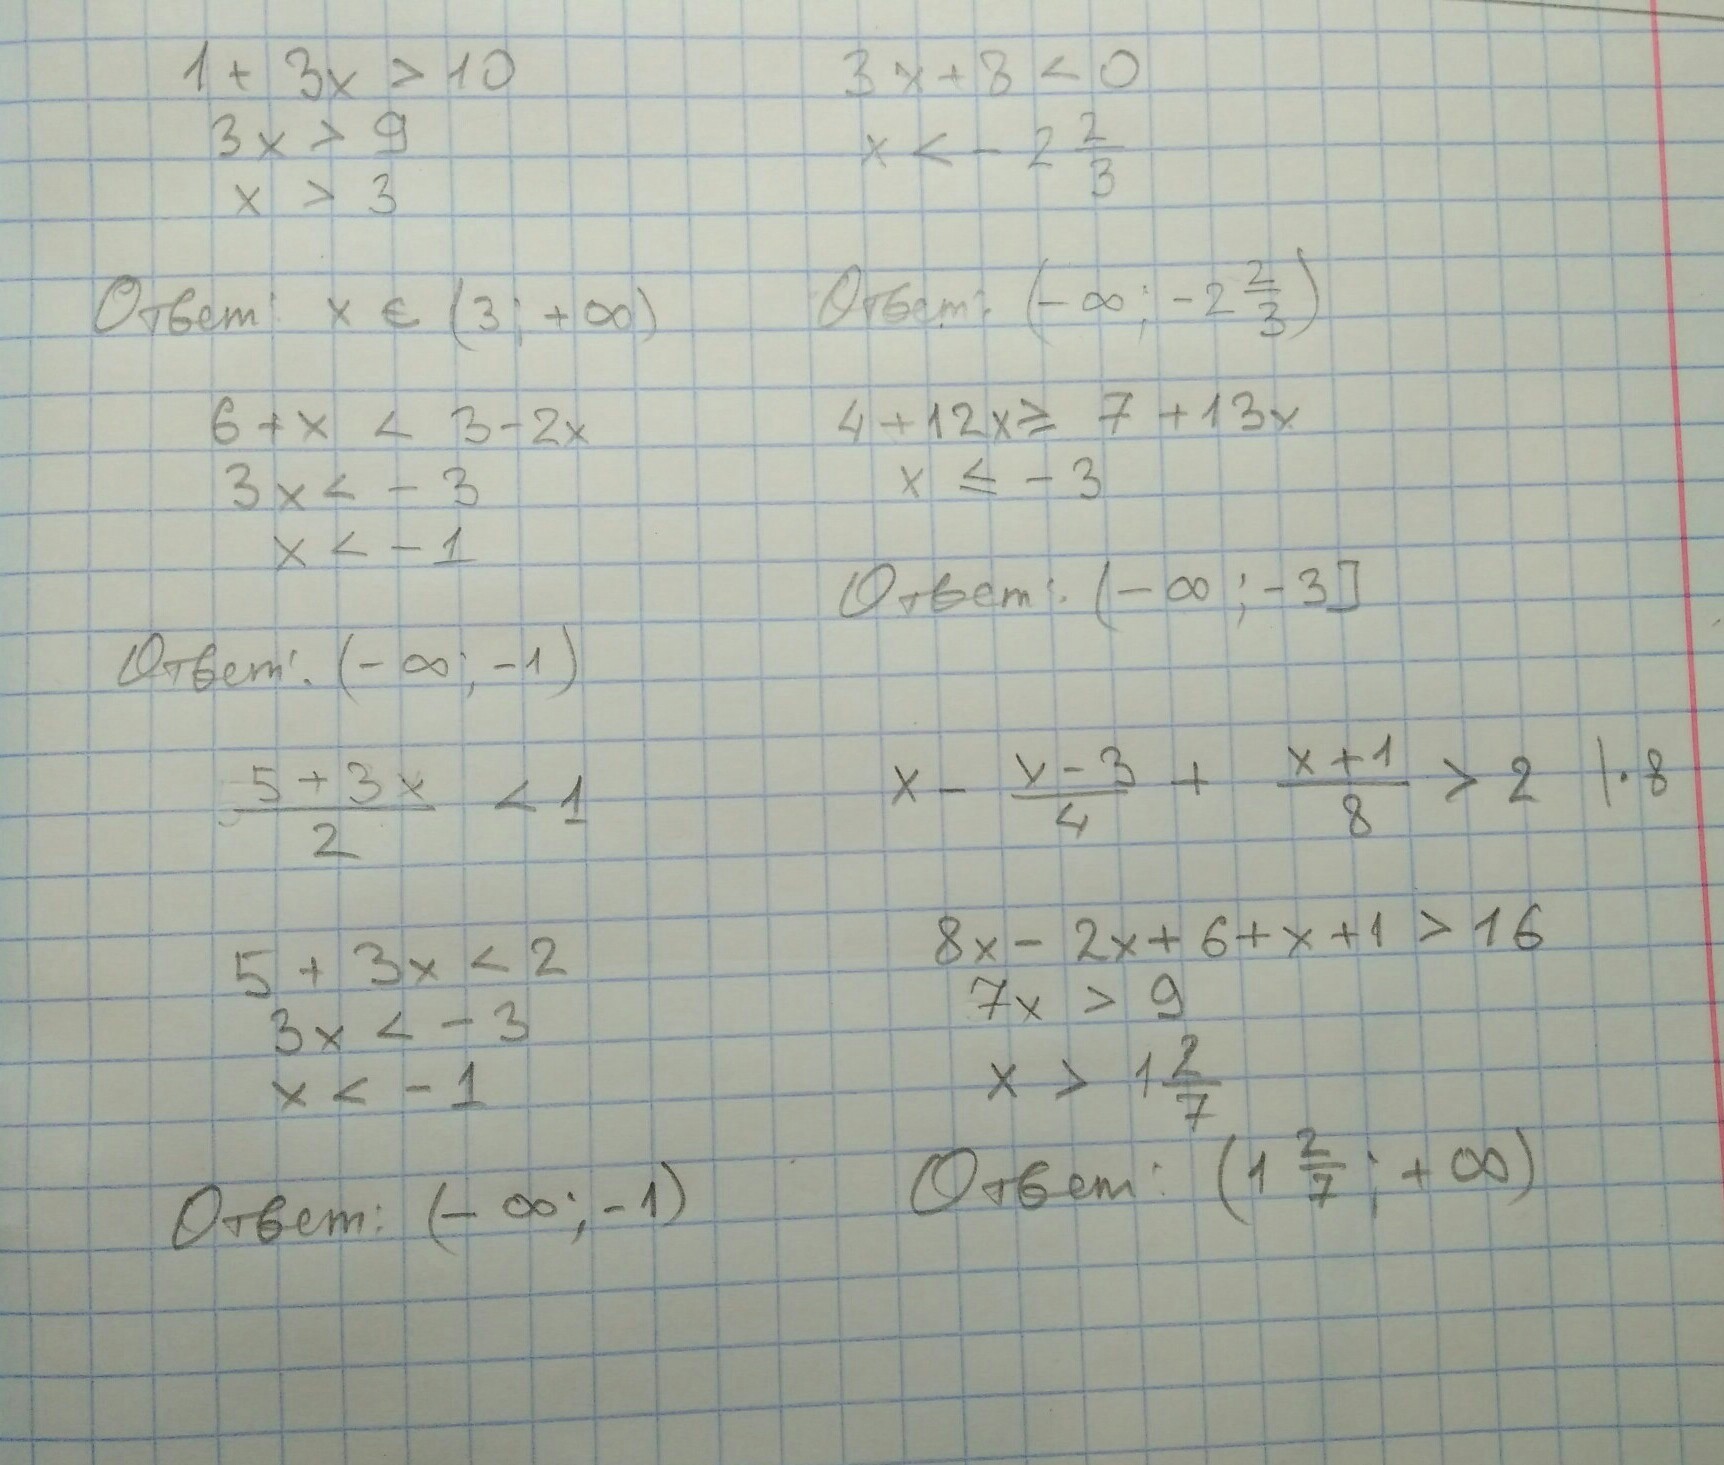 Реши неравенство 5x 3 8 0 7. Решите неравенство .-4/(2х+8). 1/(X-2)(X-3) больше 0. 3x+2/x-4 меньше 0. Решение неравенства x2-3x-4 меньше или равно нулю.